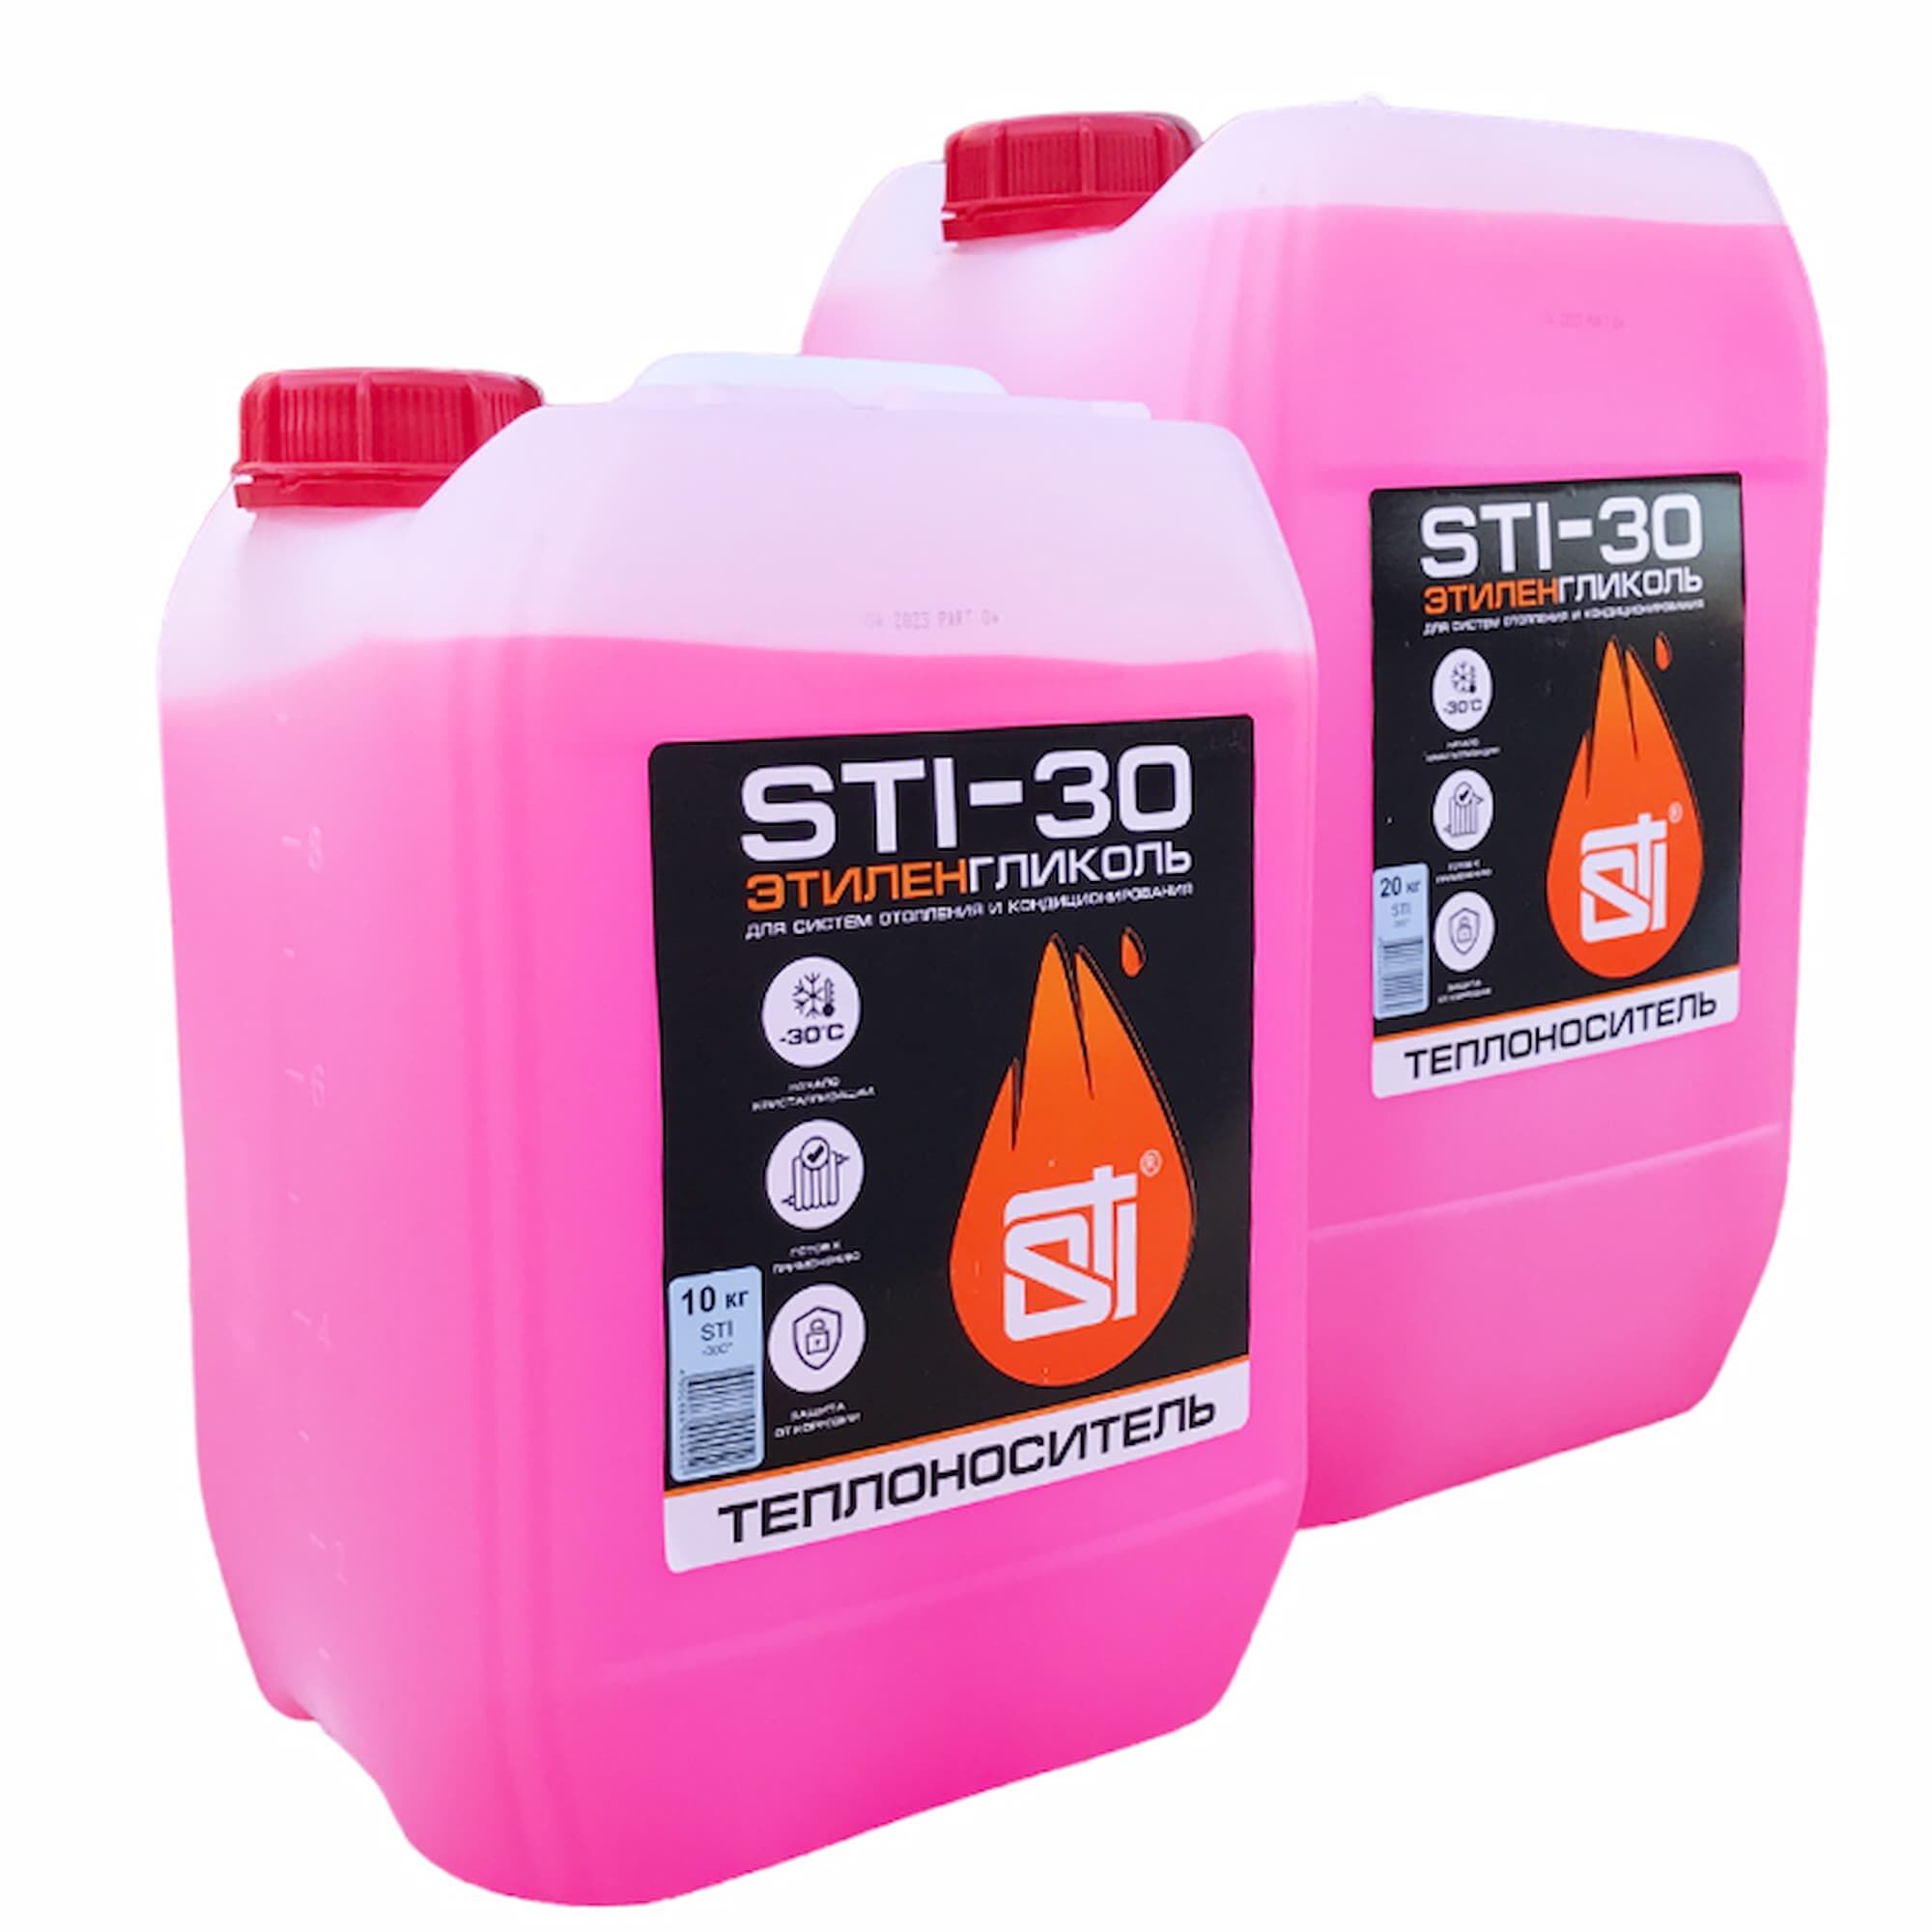 Теплоноситель (антифриз) STI этиленгликоль (-30°C) 20 кг. 3